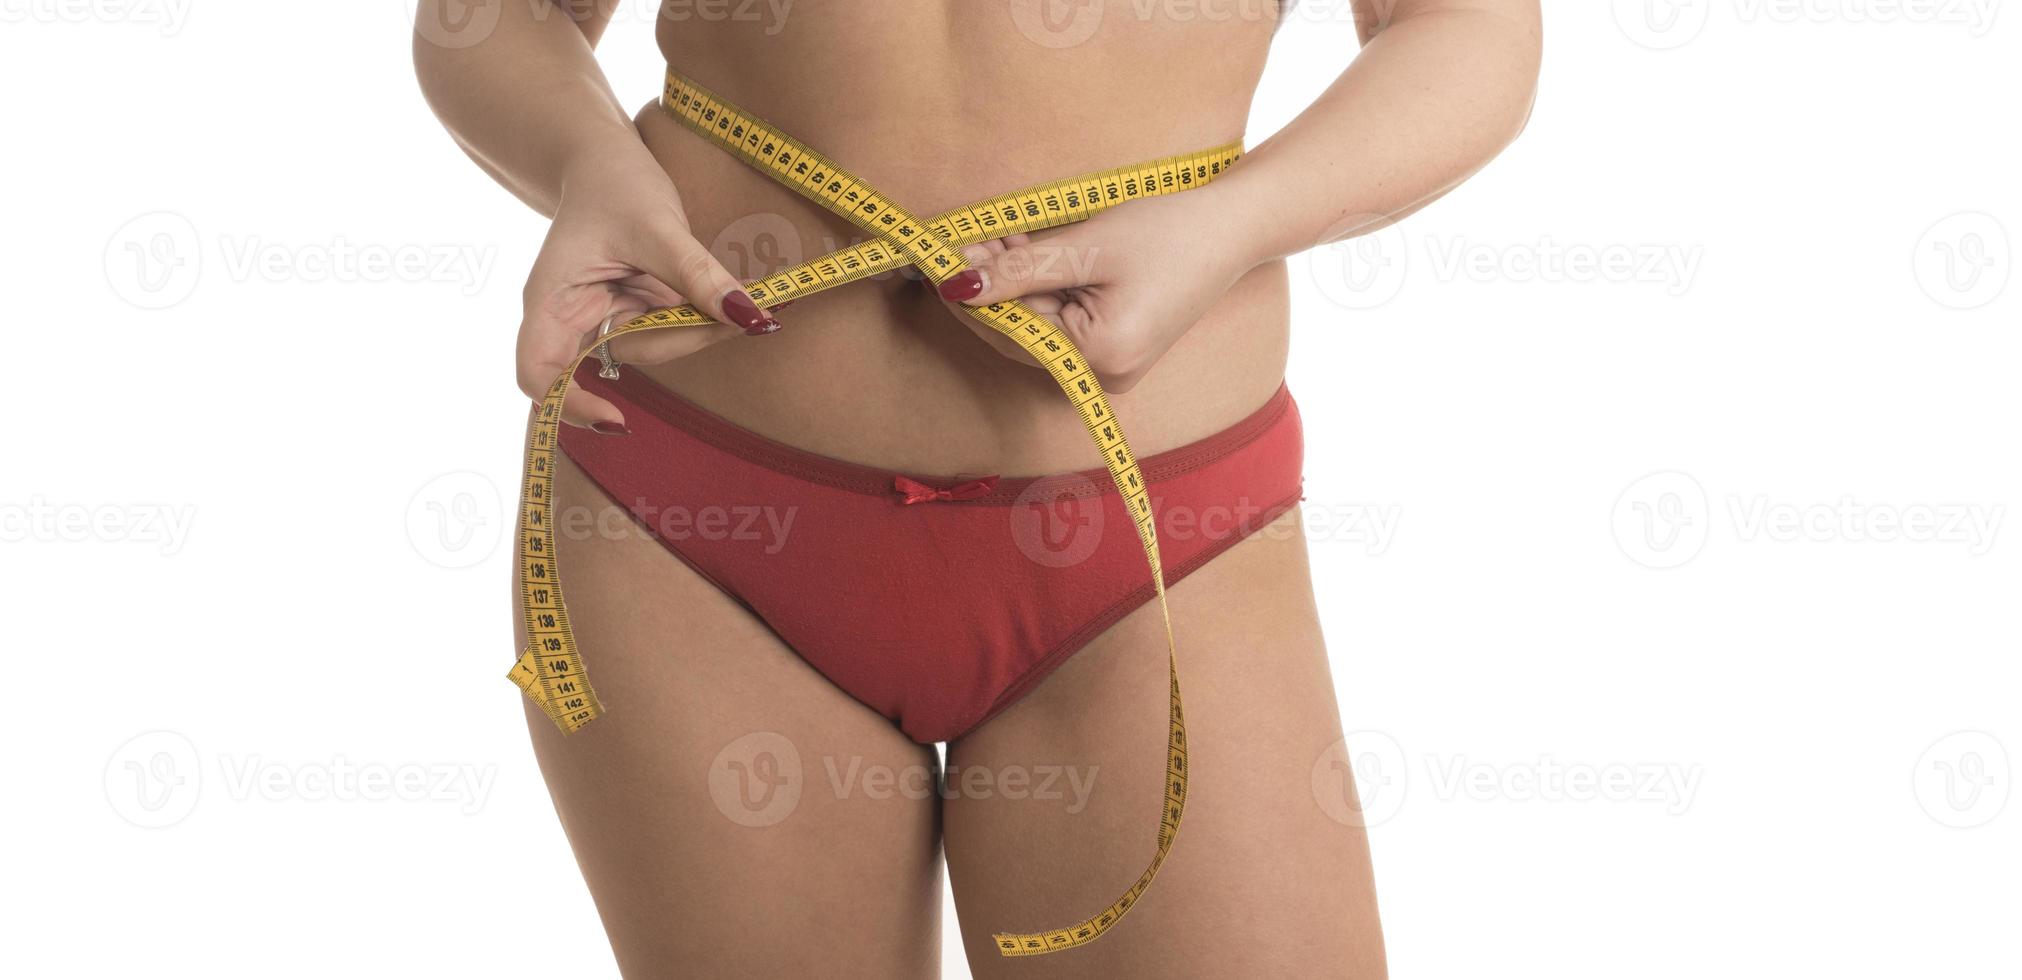 mulher gorda medindo seu estômago com excesso de peso, obesidade. isolado no fundo branco. foto